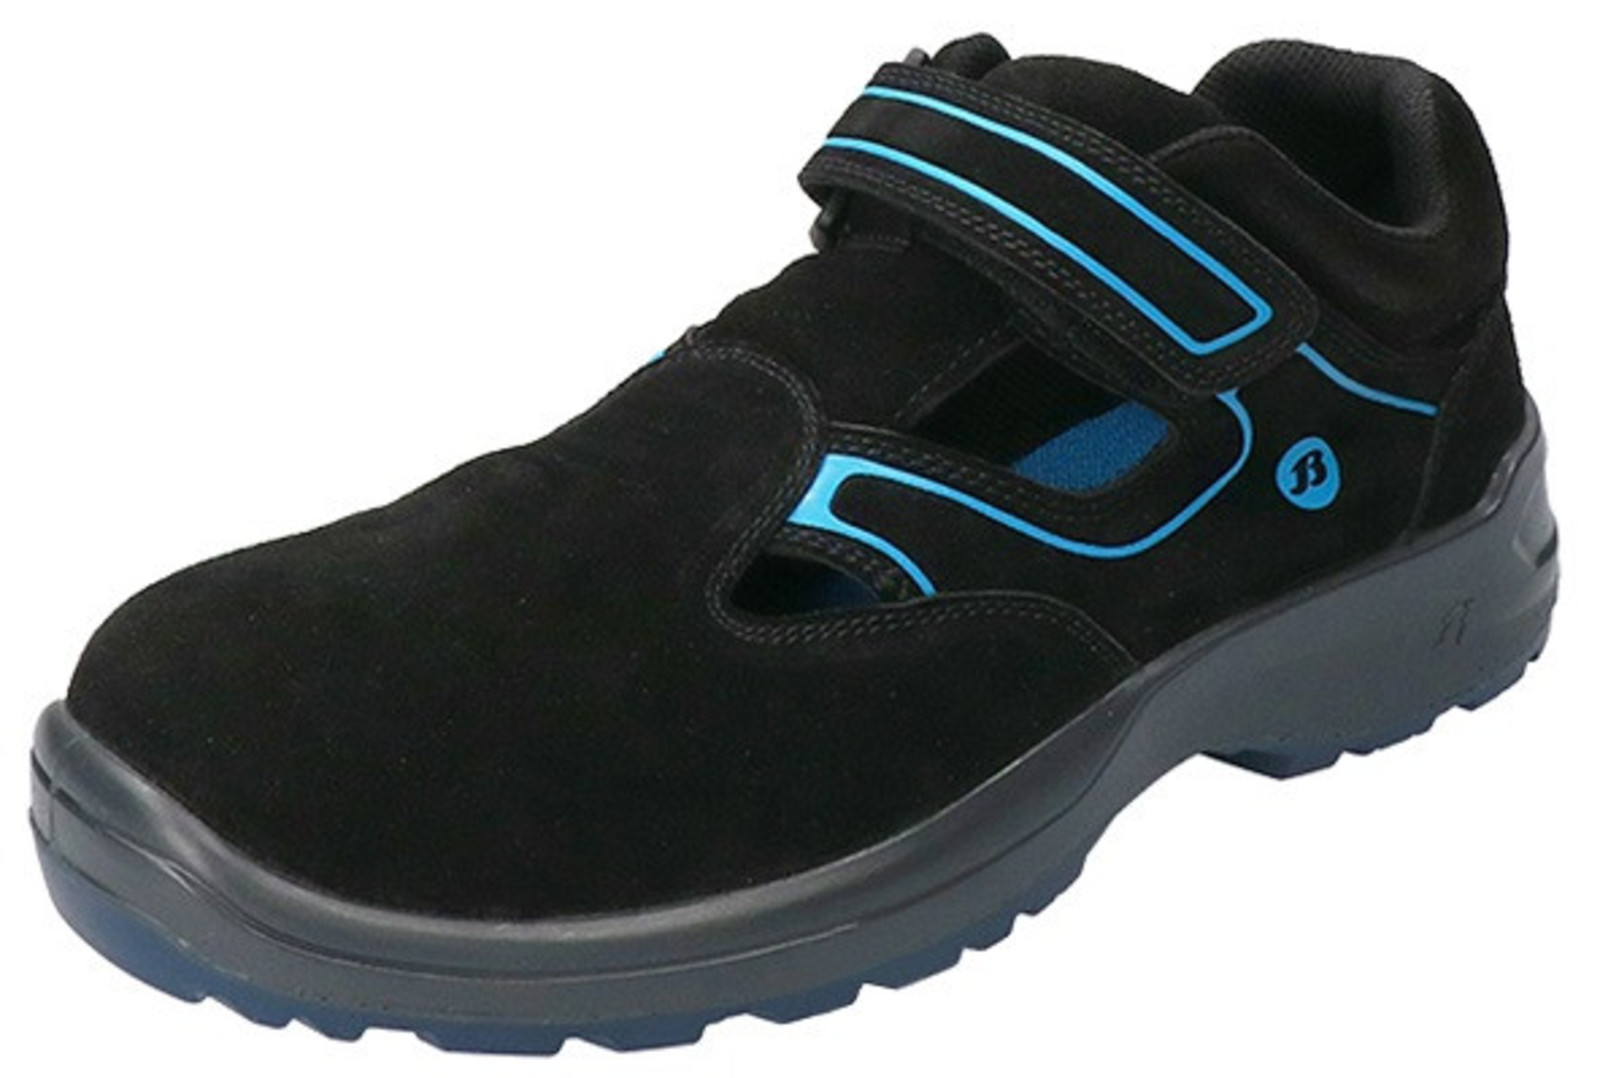 Bezpečnostné sandále Baťa Falcon ESD S1 - veľkosť: 39, farba: čierna